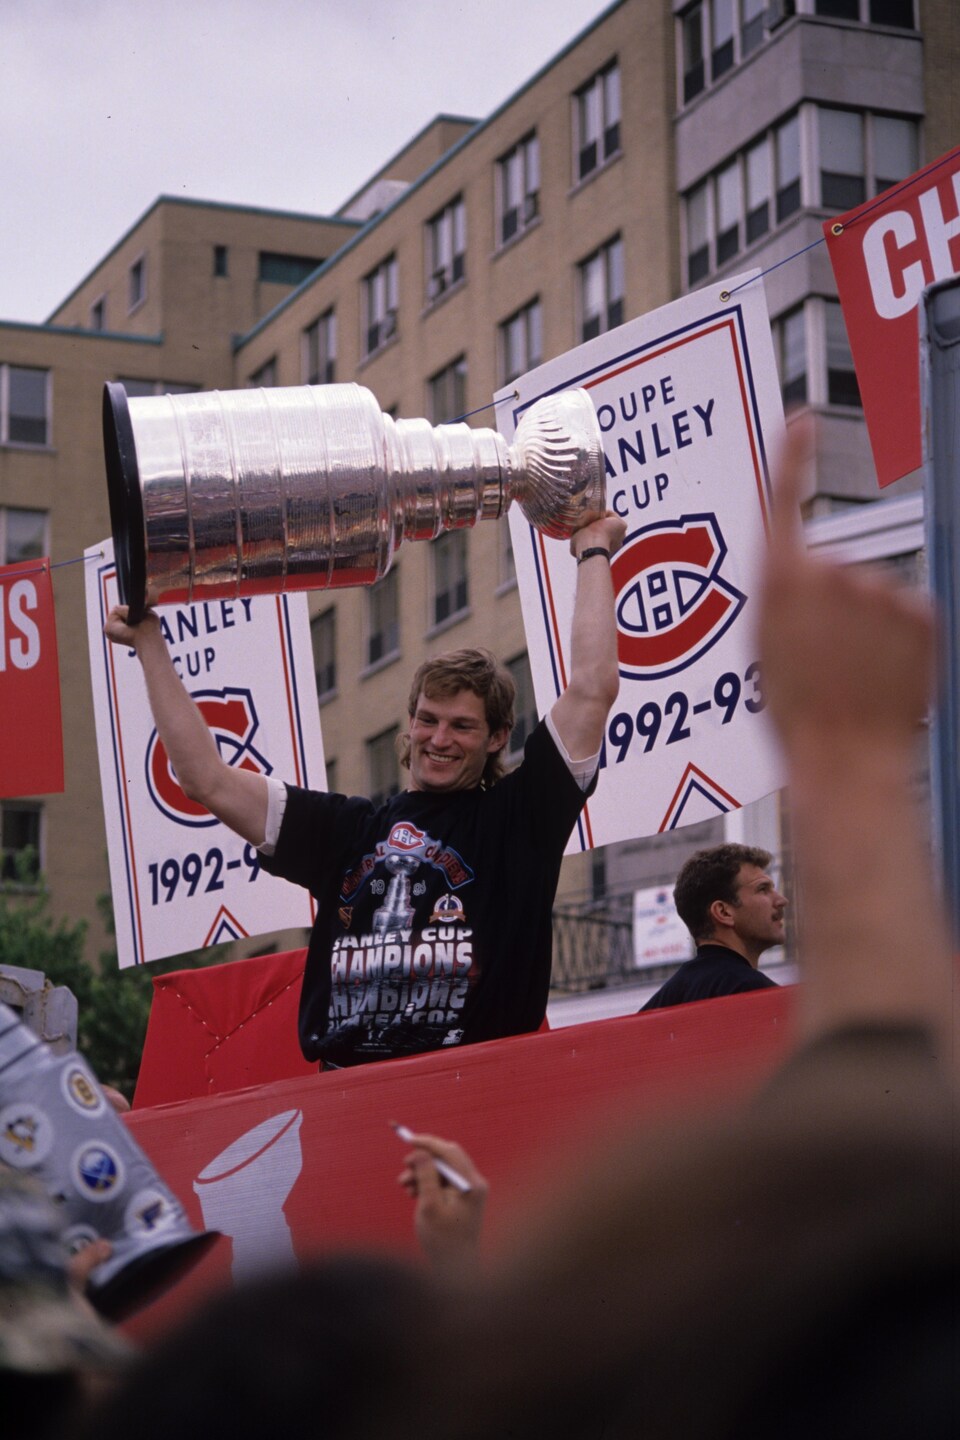 Un homme tient un trophée à bout de bras devant une foule et sourit.